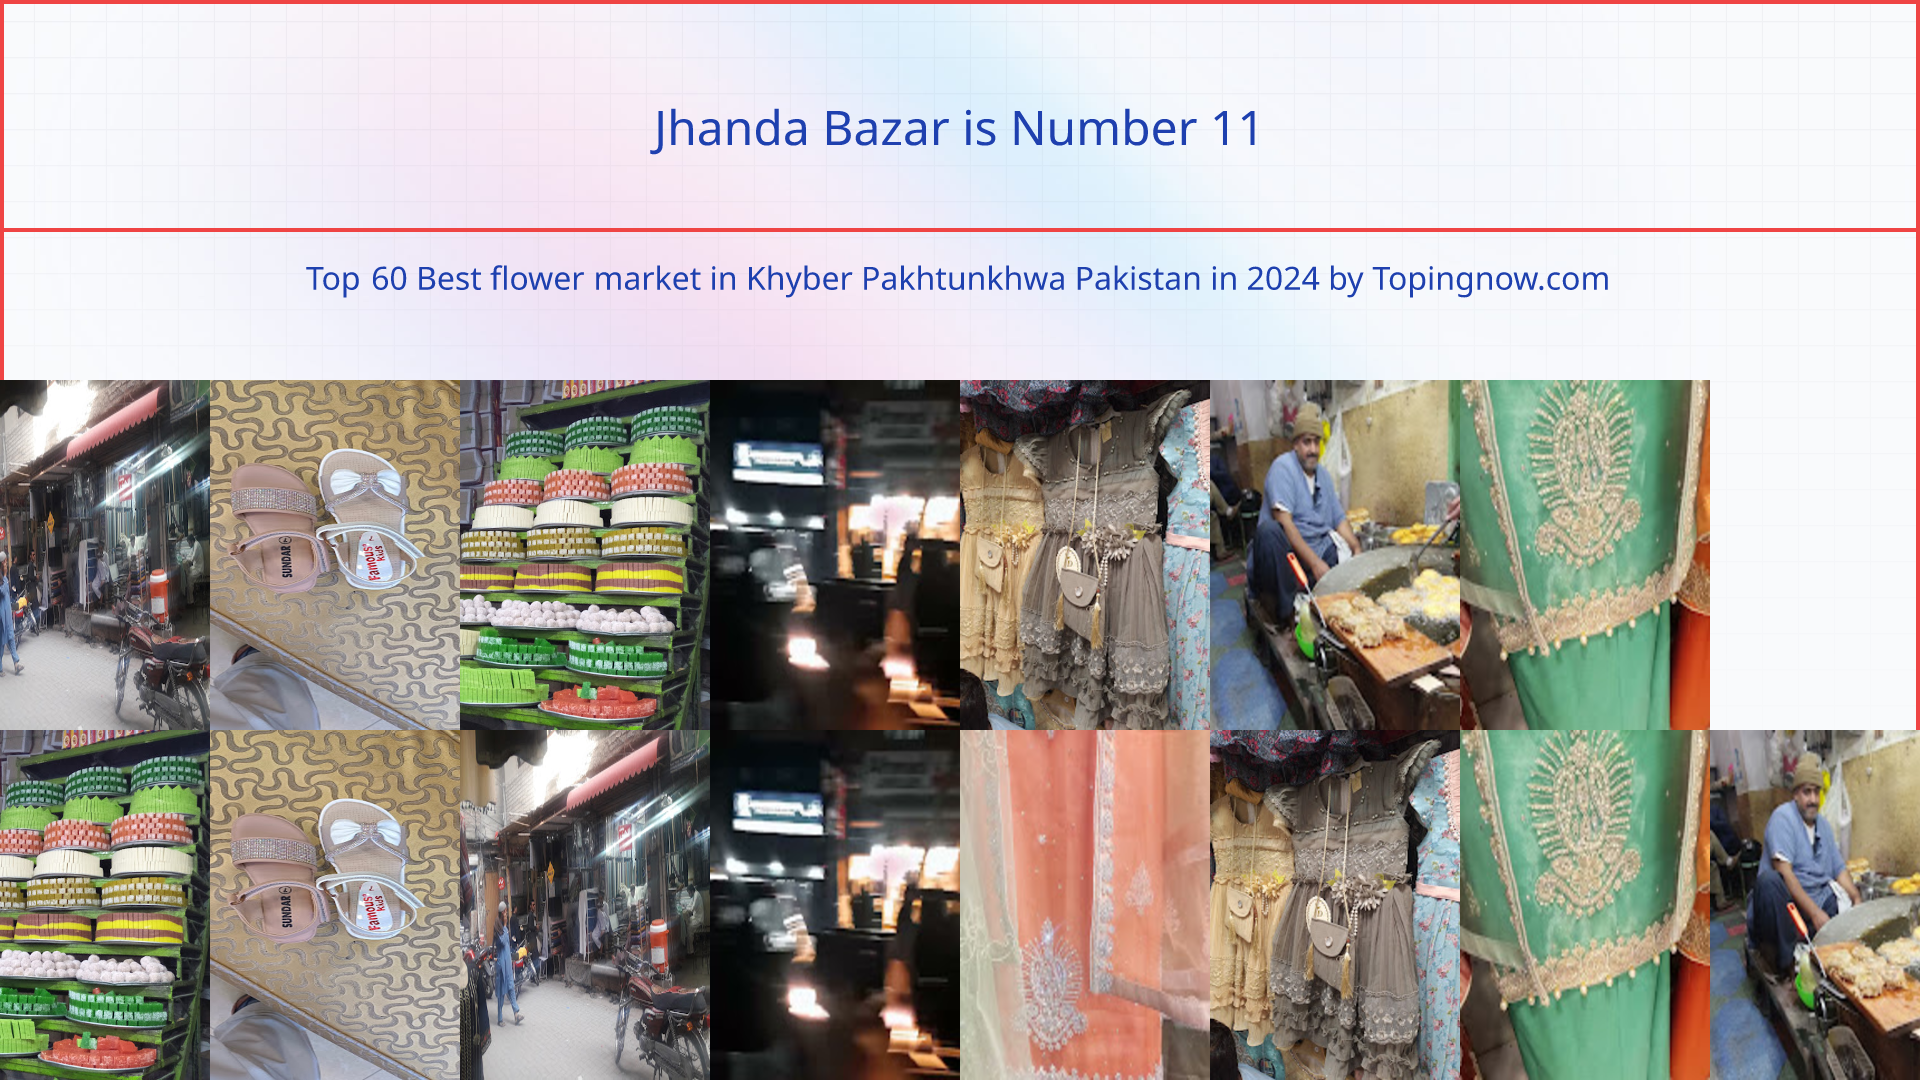 Jhanda Bazar: Top 60 Best flower market in Khyber Pakhtunkhwa Pakistan in 2024